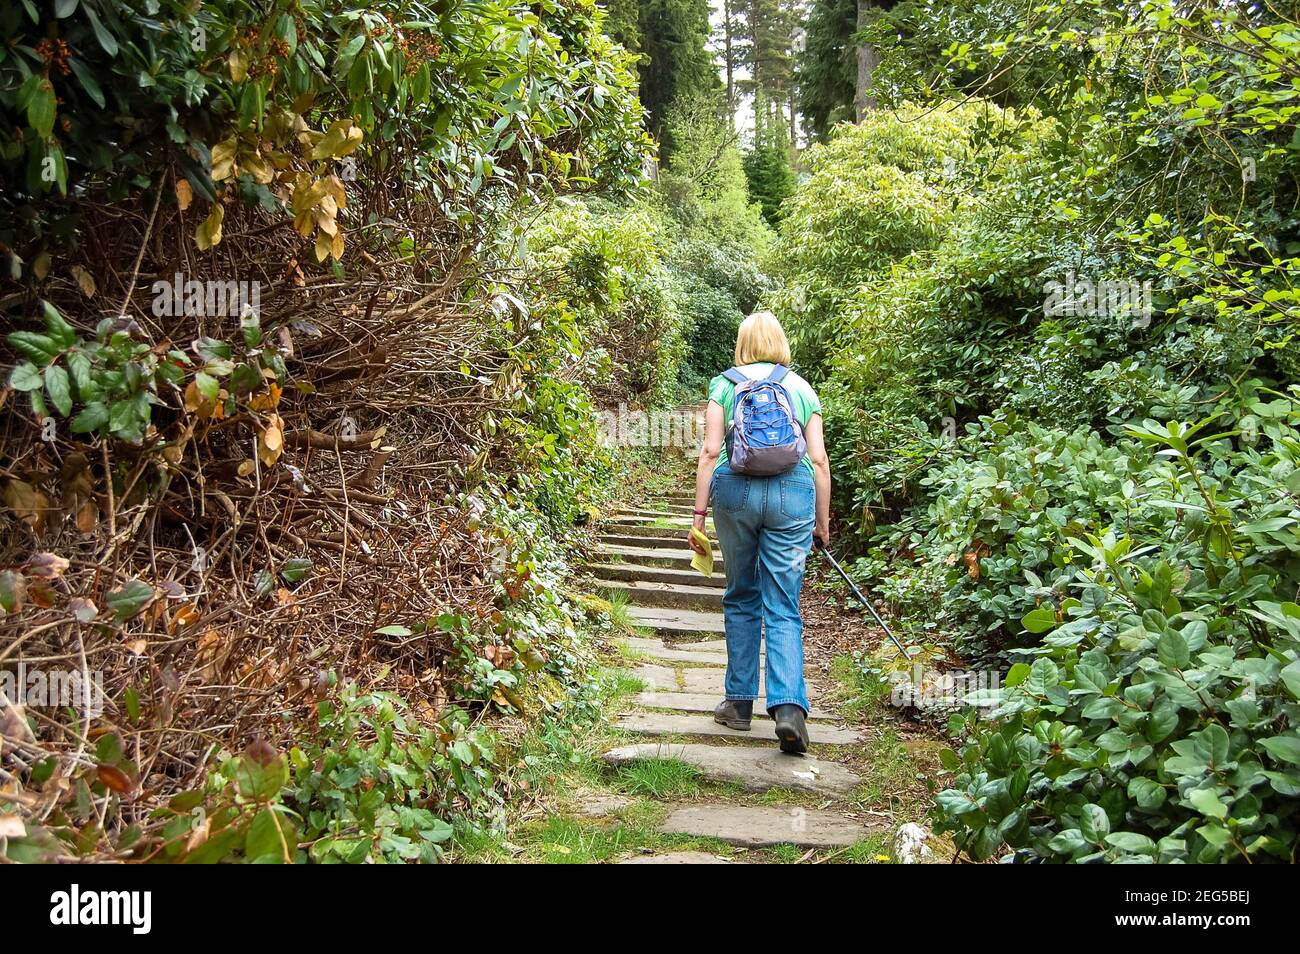 Cragside Northumberland UK ragazza bionda con lunghi capelli a piedi in legno o foresta cespugli alberi giardino giardini zaino recintato Foto Stock